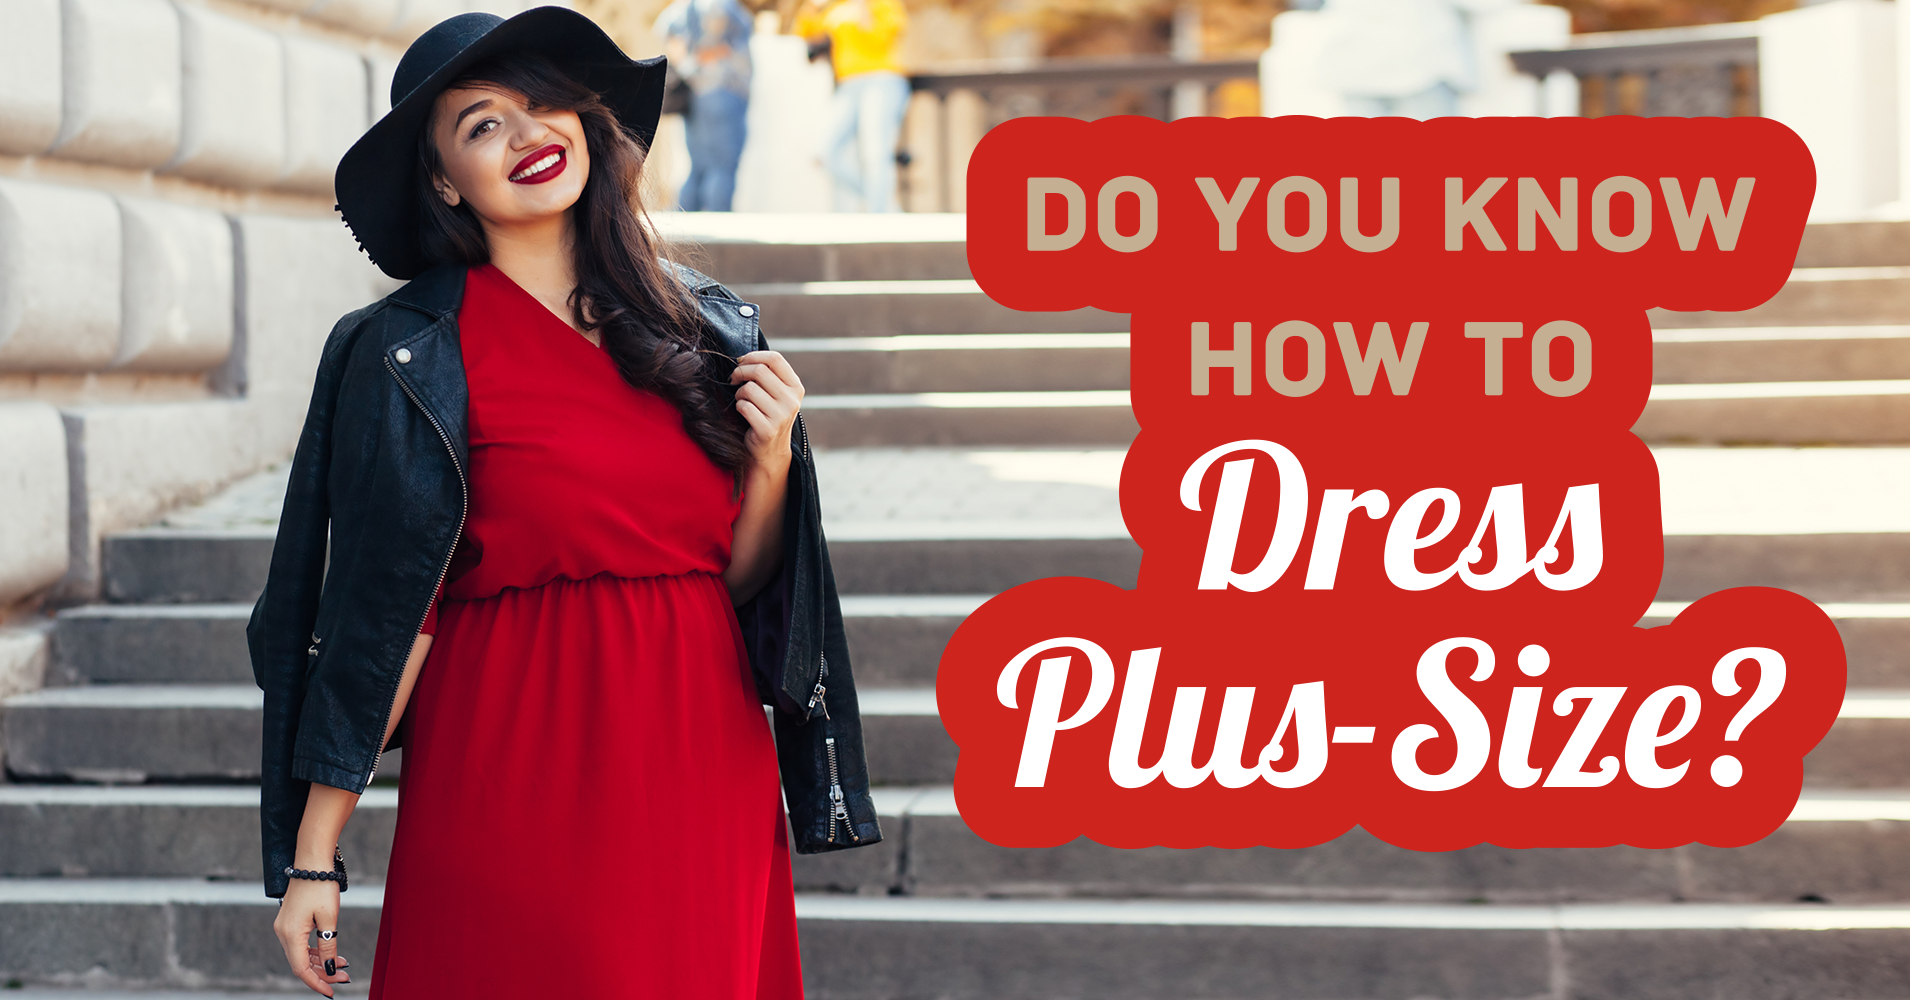 Do You Know How Do Dress Plus-Size? - Quiz - Quizony.com